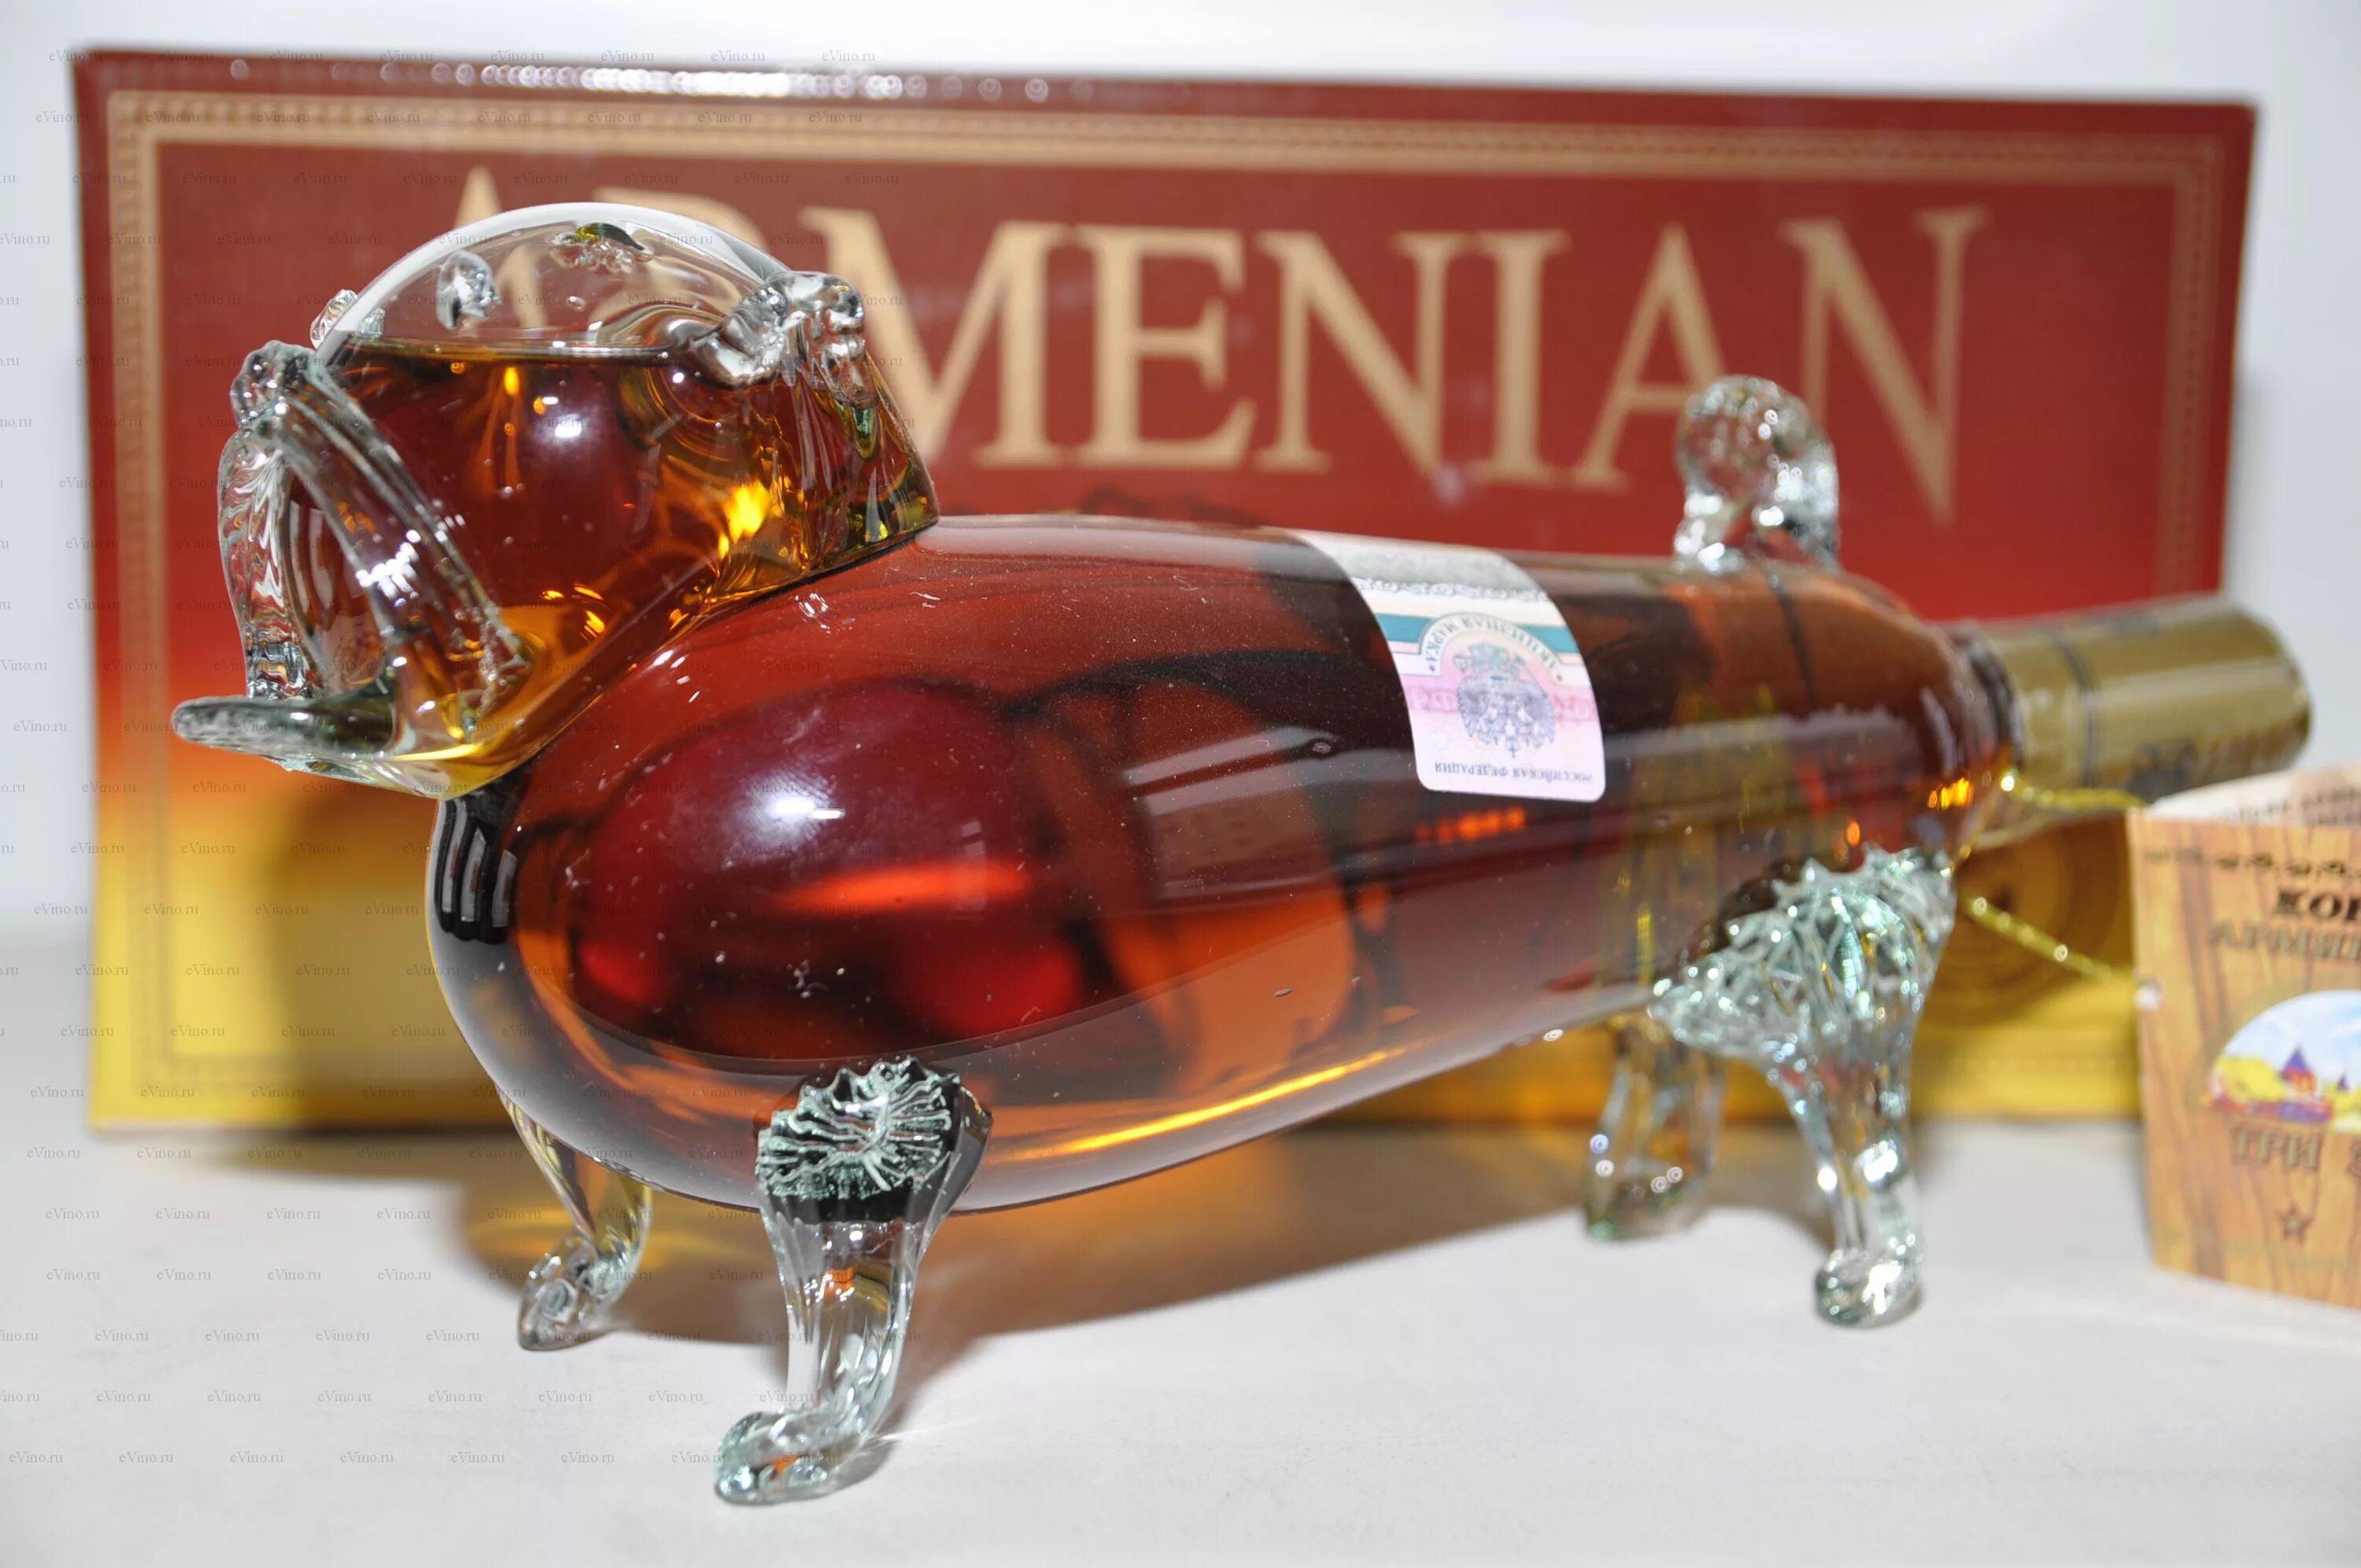 Армянский коньяк сувенирный Иджеванский. Большая бутылка коньяка